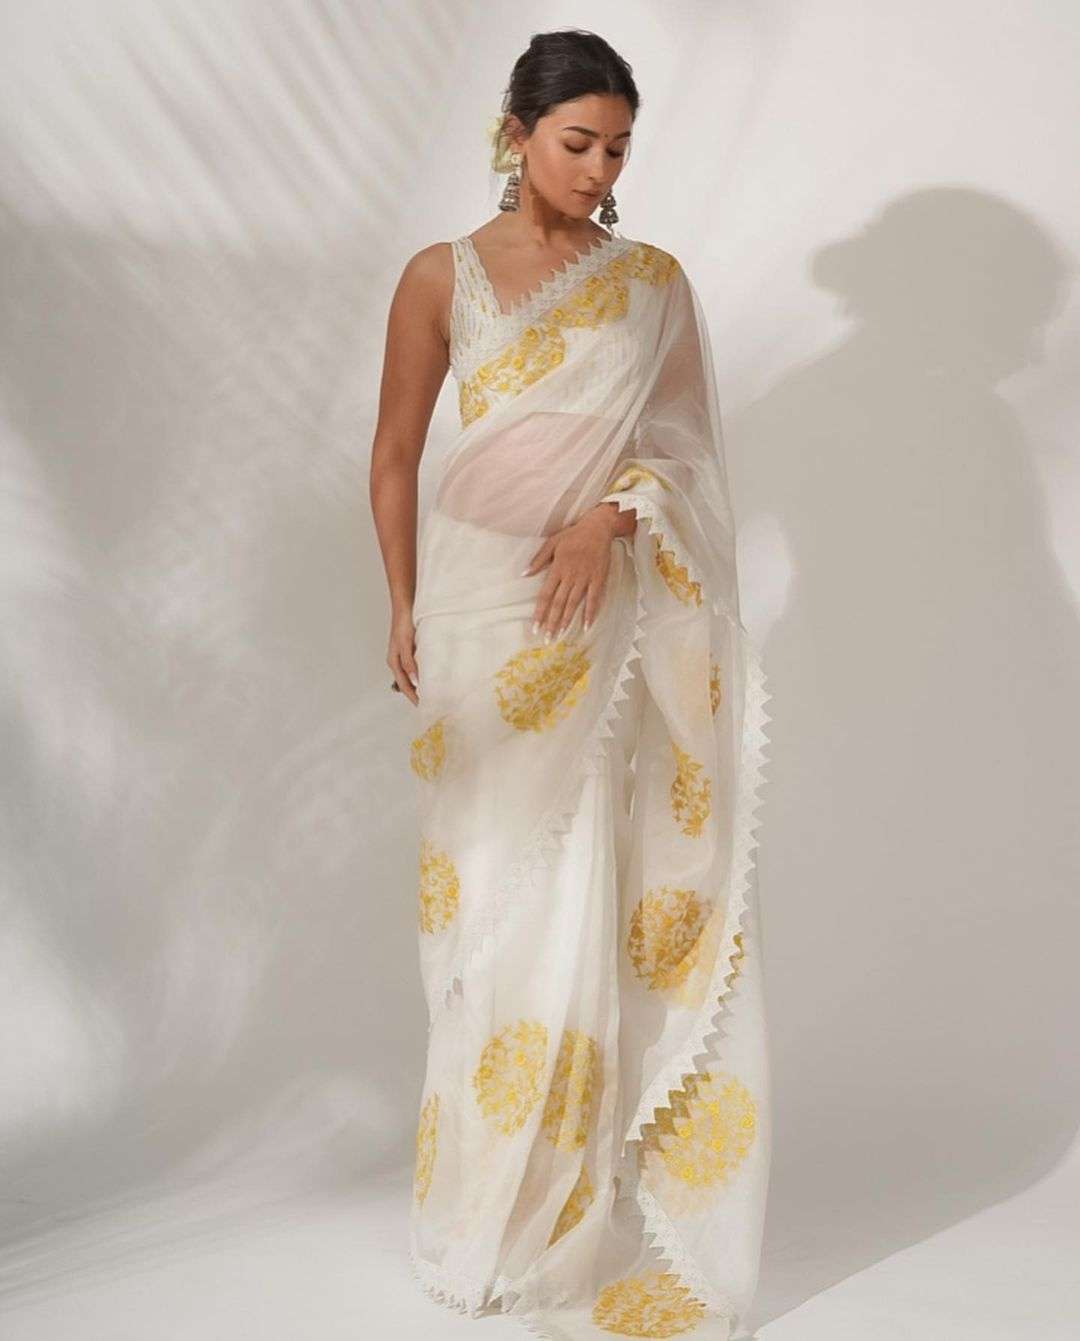 Alia Bhat Wear Organza Silk With Embroidery Thread Work  Whi...